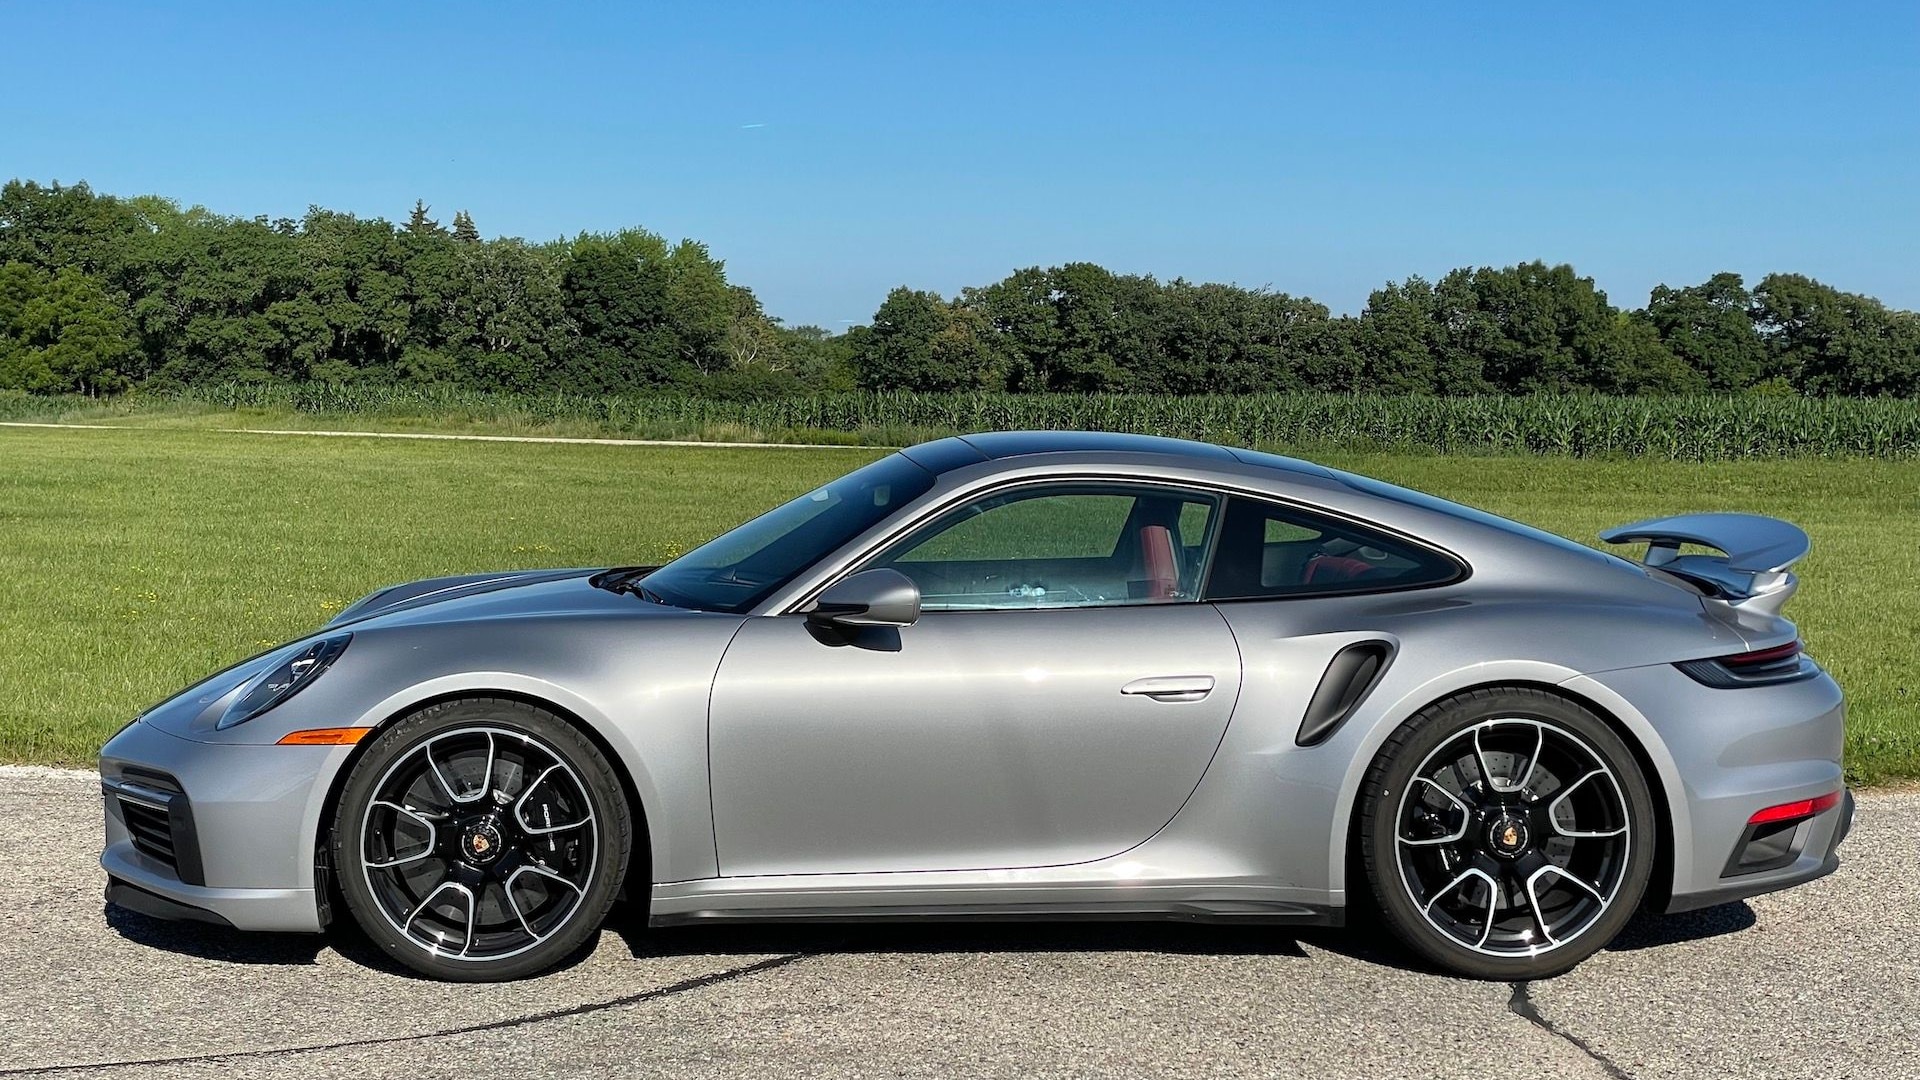 Definitie Rijd weg Open Review update: 2021 Porsche 911 Turbo S deals out supercar thrills